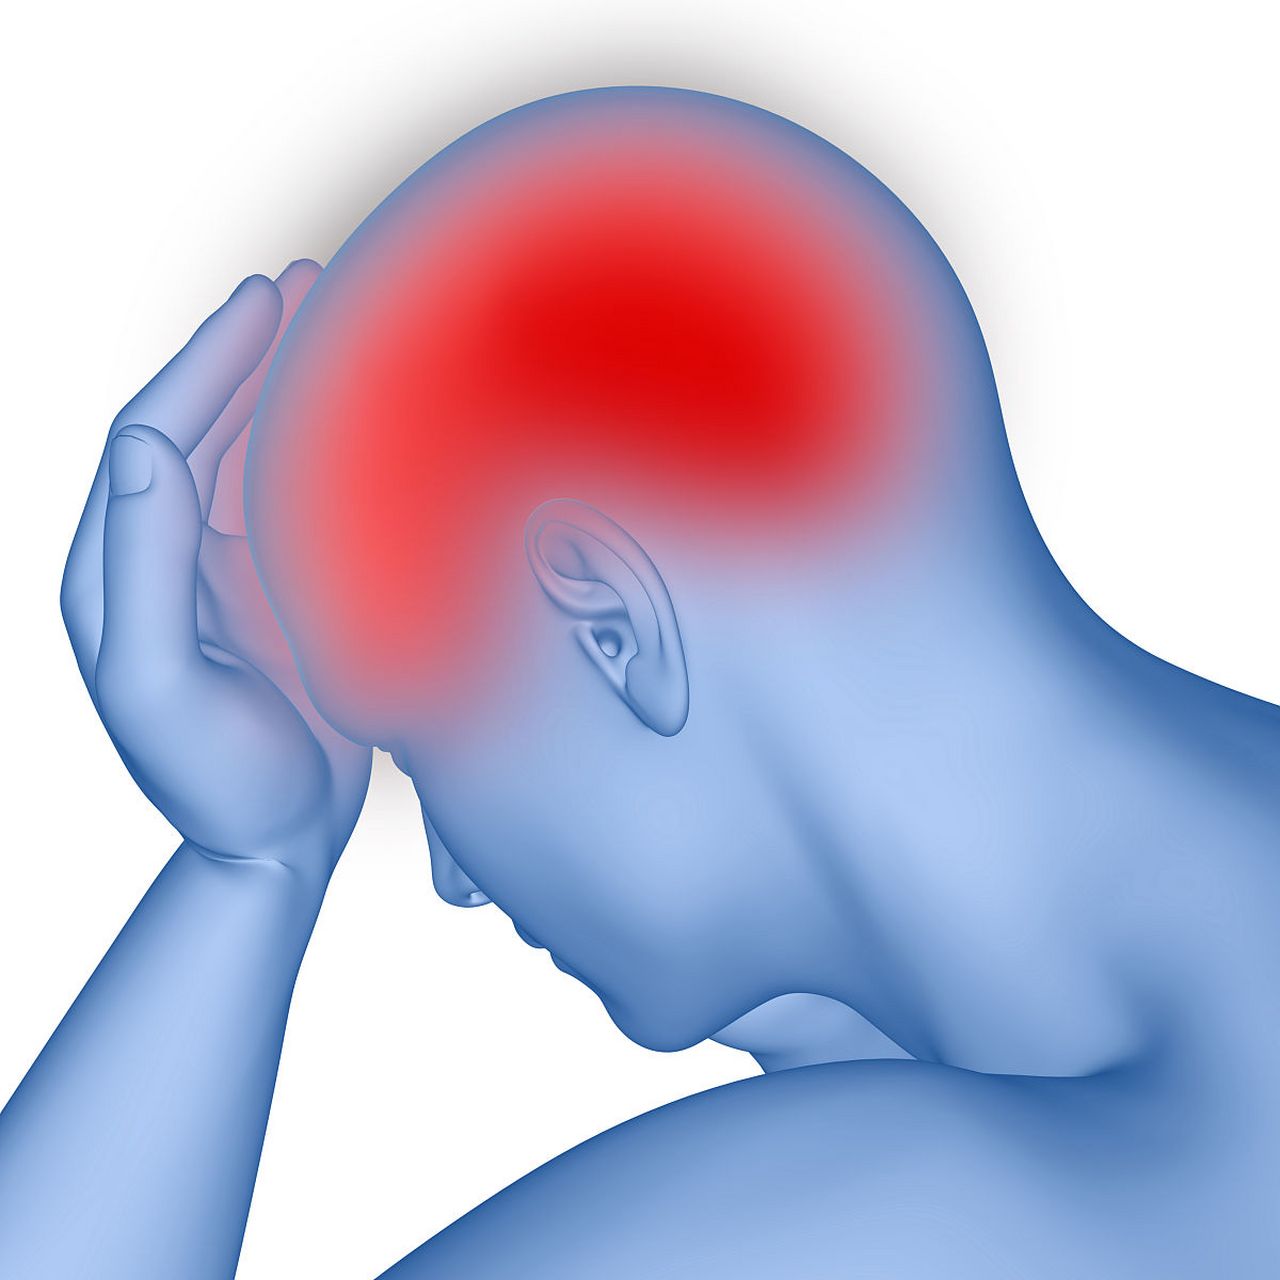 前庭性偏头痛(vestibular migraine)是一种常见的偏头痛类型,其主要